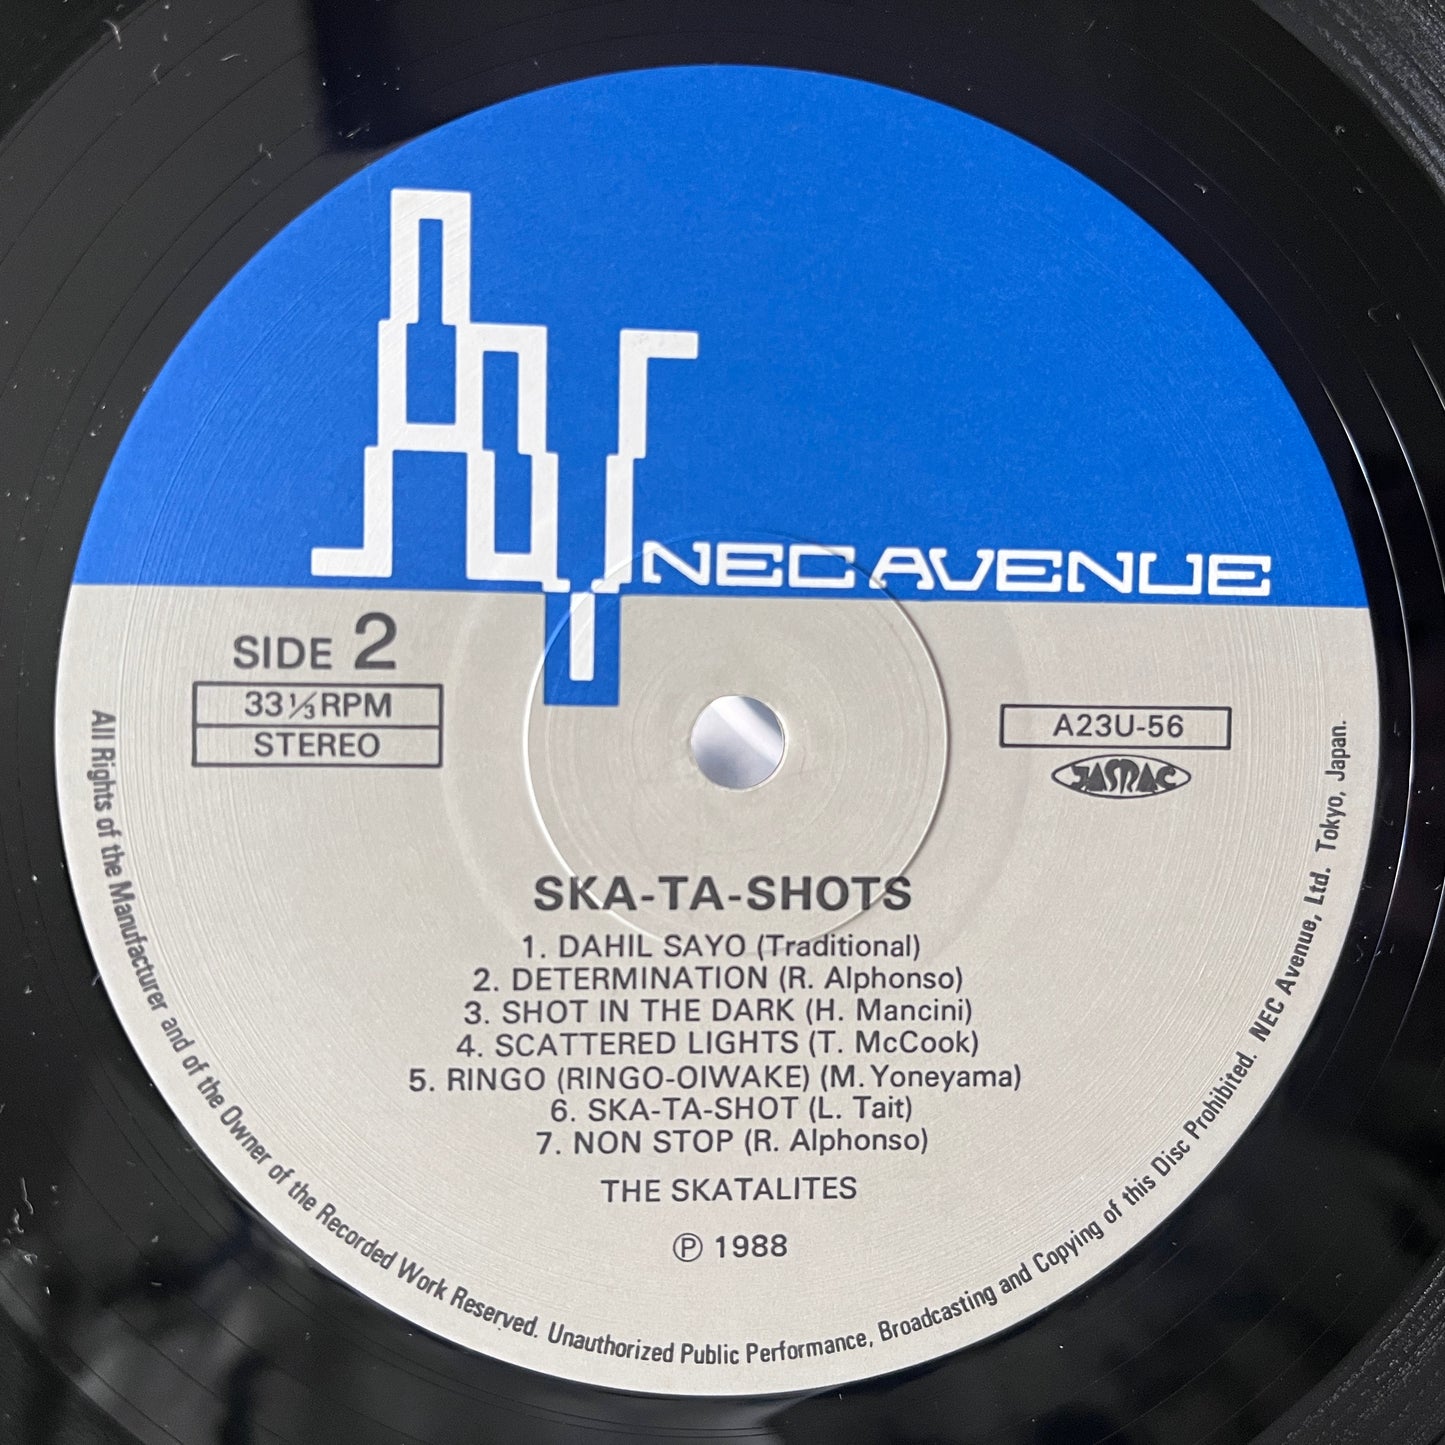 The Skatalites – Ska-Ta-Shots